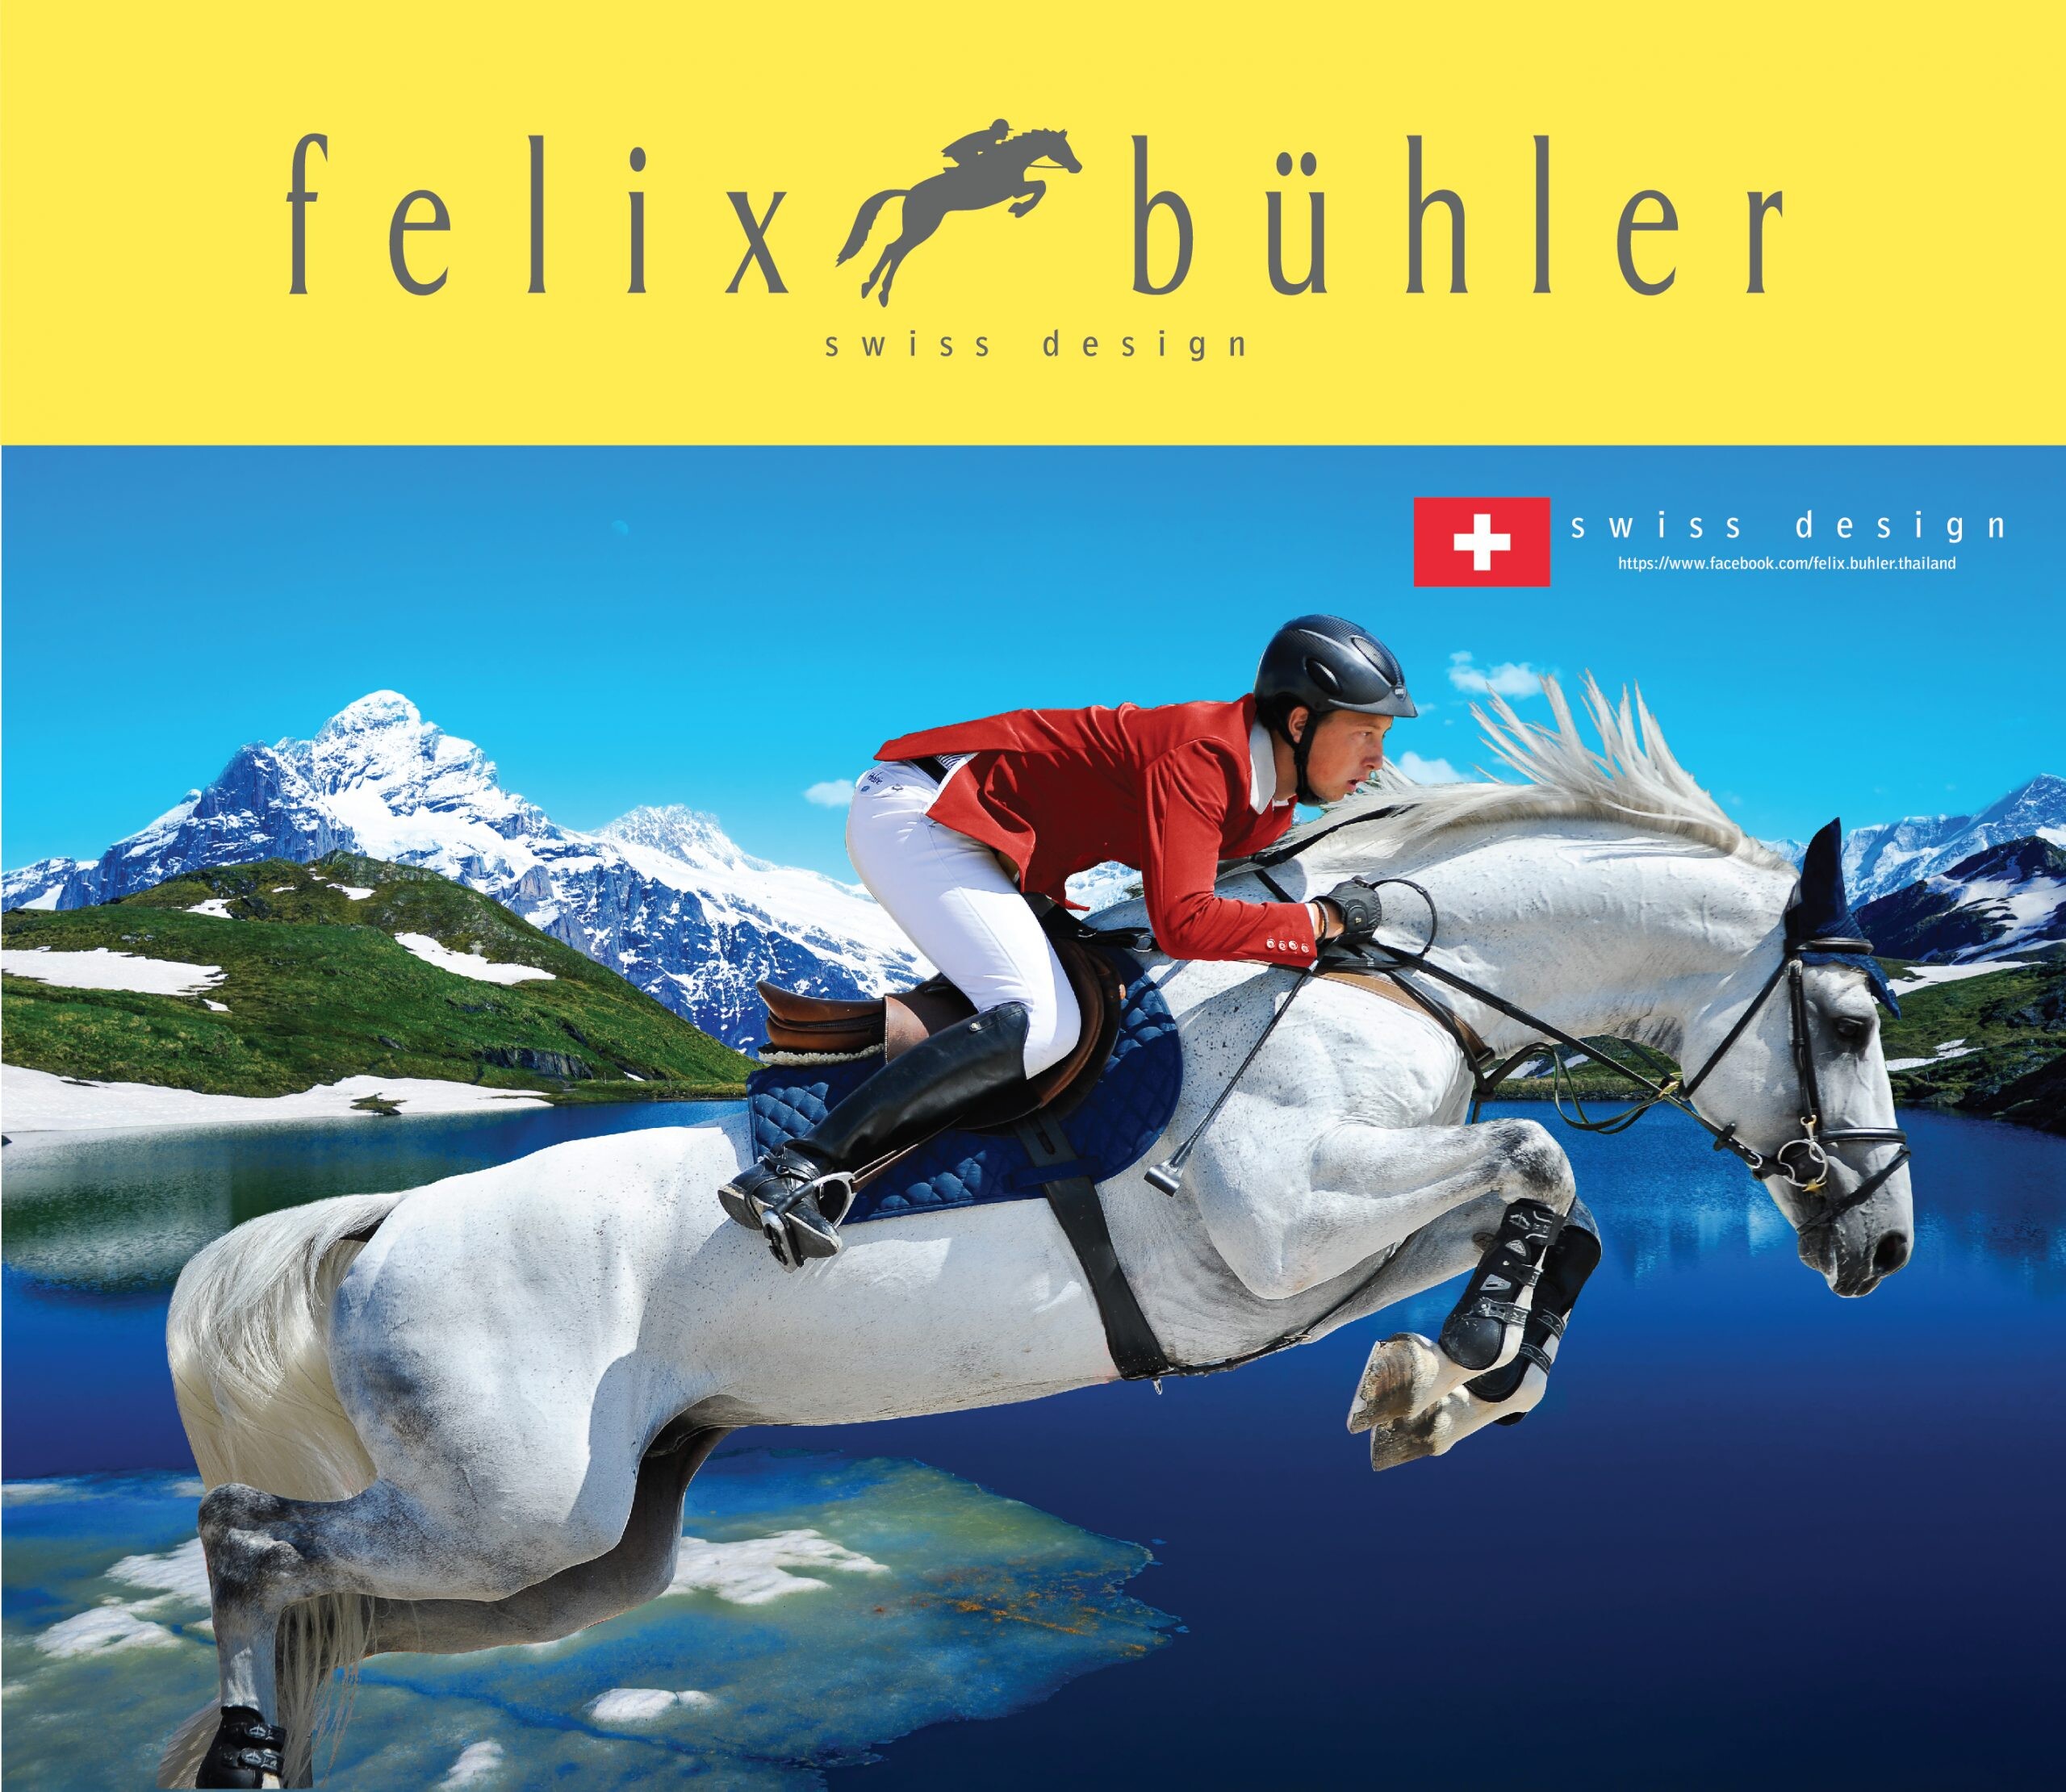 FELIX BUHLER เปิดตัวแบรนด์แอมบาสเดอร์…คนล่าสุด มาร์ติน ฟูชส์ (MARTIN FUCHS) นักกีฬาขี่ม้า สัญชาติสวิส